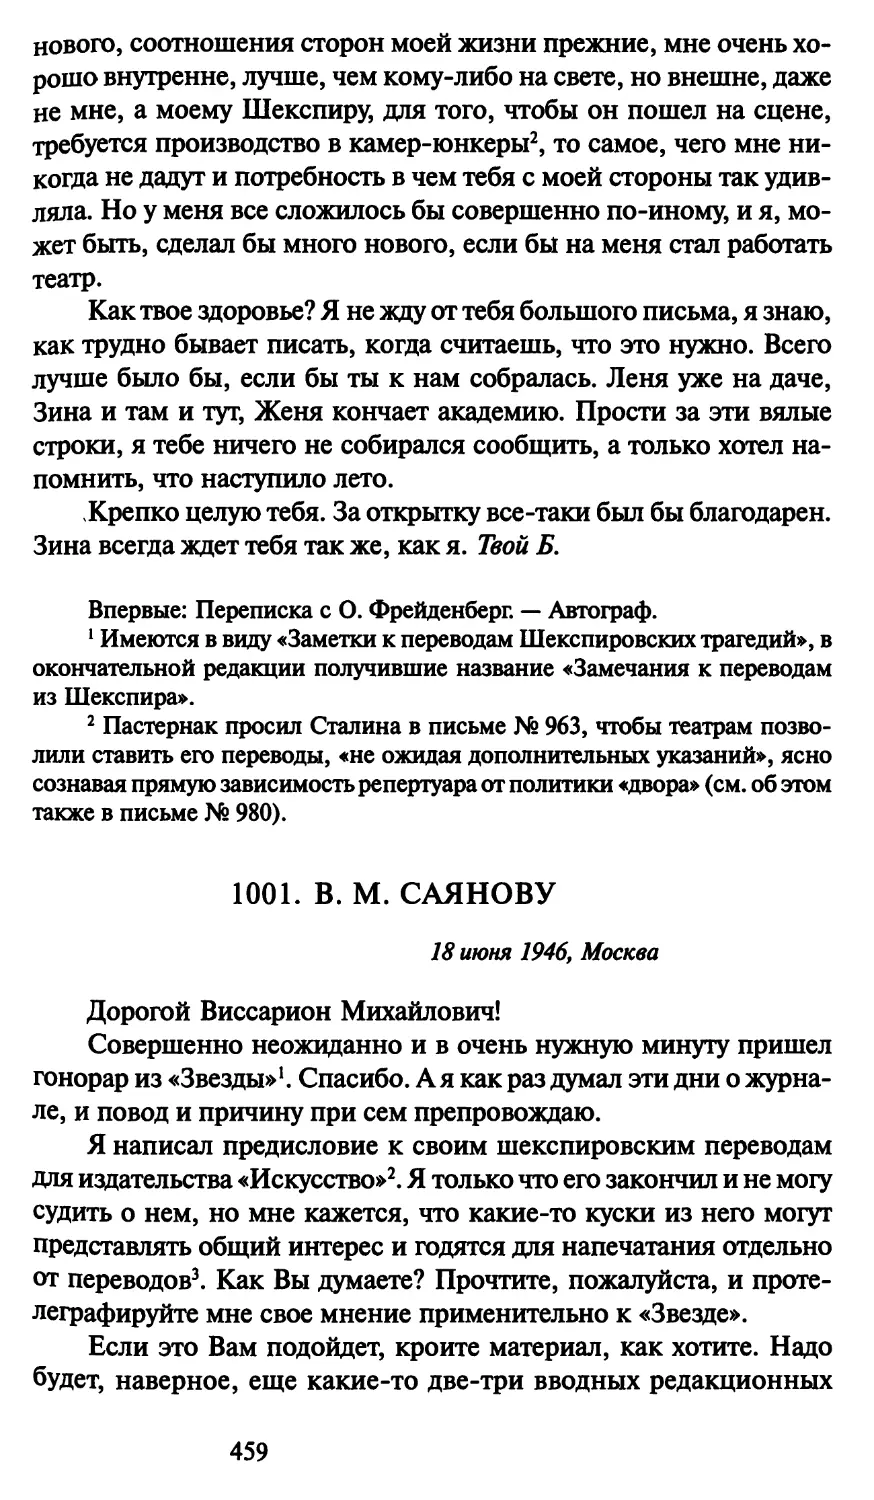 1001. В. М. Саянову 18 июня 1946